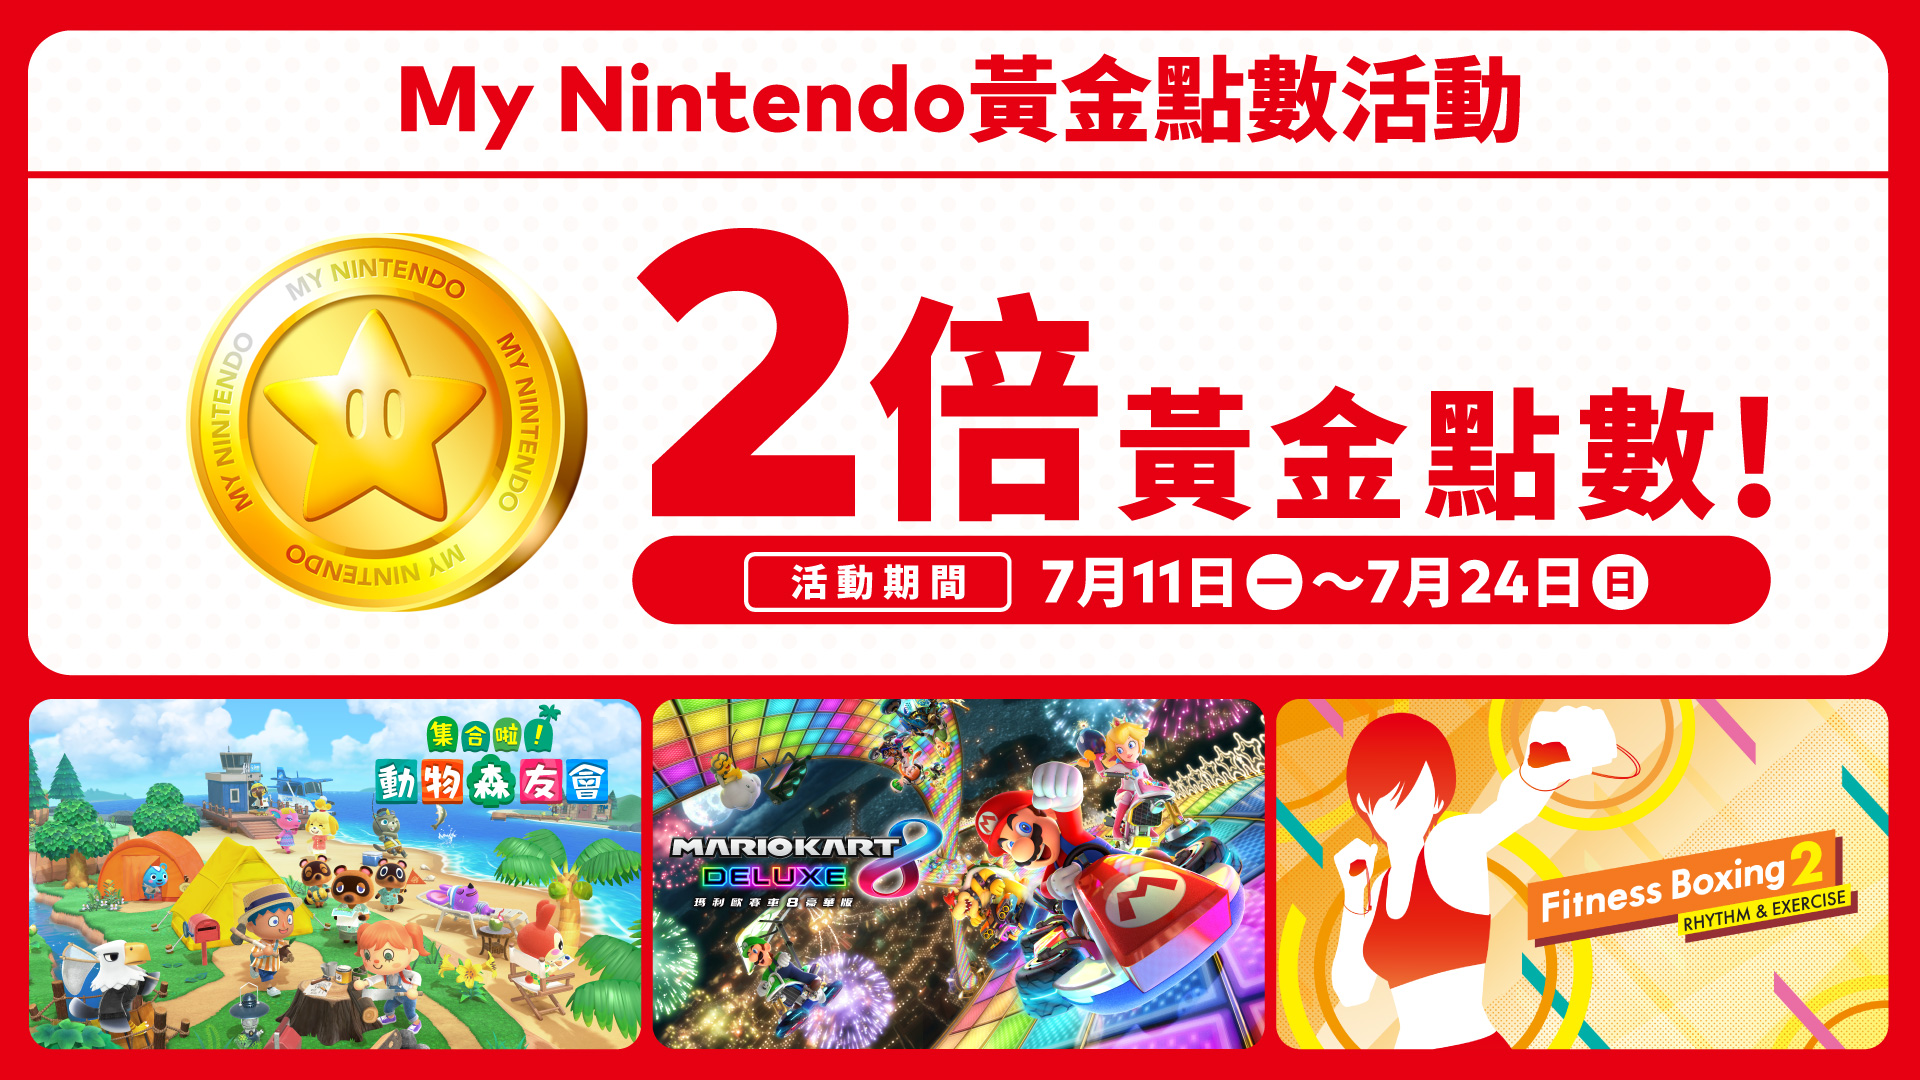 港区「My Nintendo黄金点数2倍活动」现正举行，活动至7月24日为止。